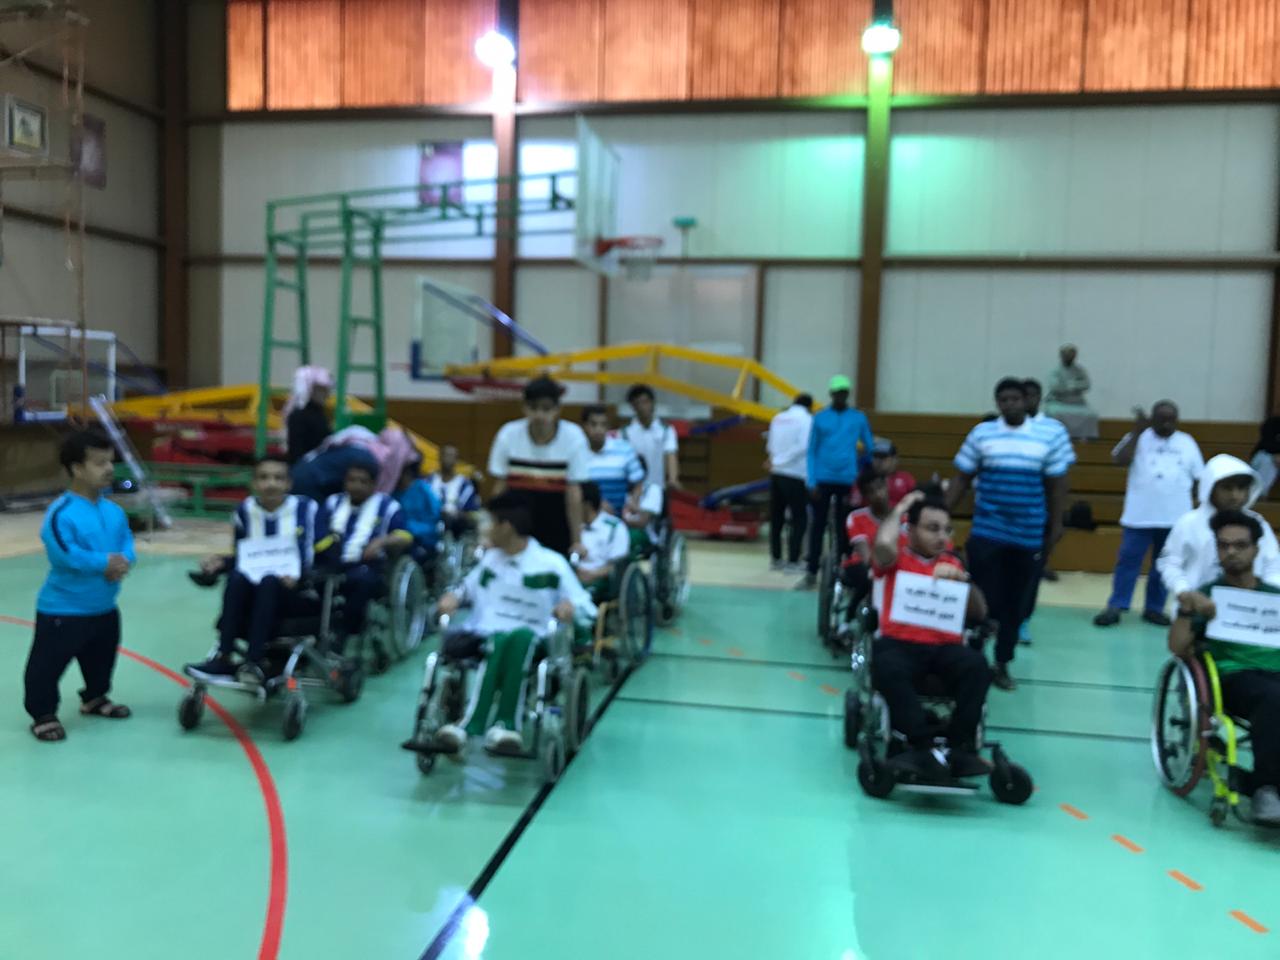 نادي المدينة المنورة لذوي الإعاقة يُنظم بطولة “البوتشيا